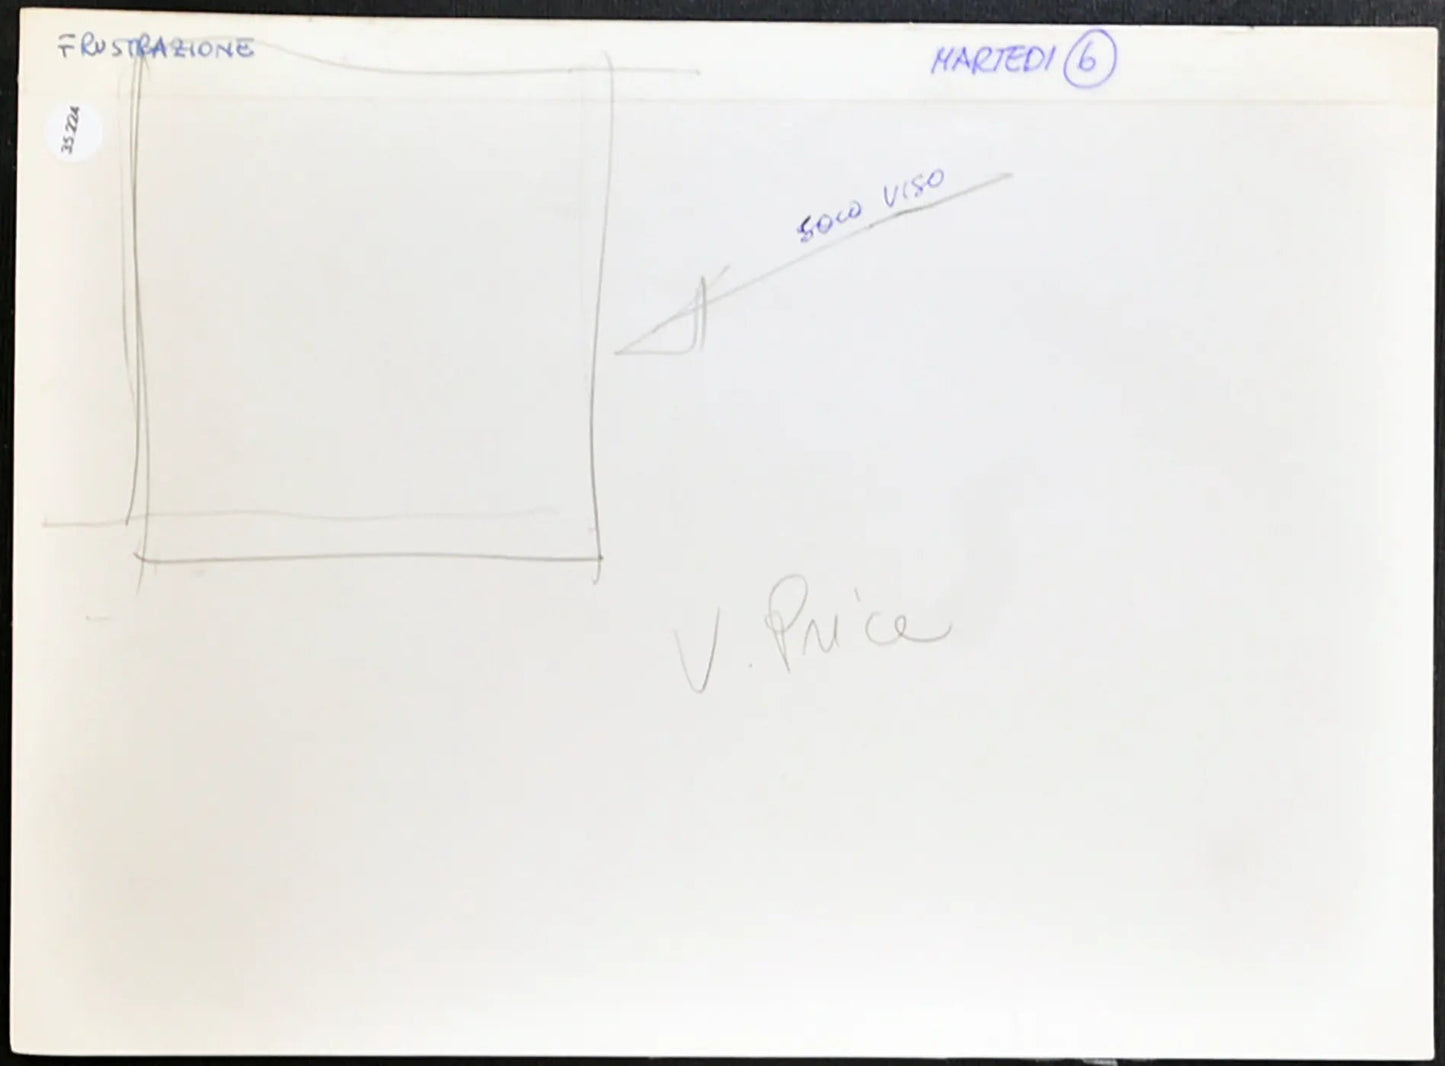 Vincent Price Film Frustrazione 1972 Ft 35224 - Stampa 24x18 cm - Farabola Stampa ai sali d'argento